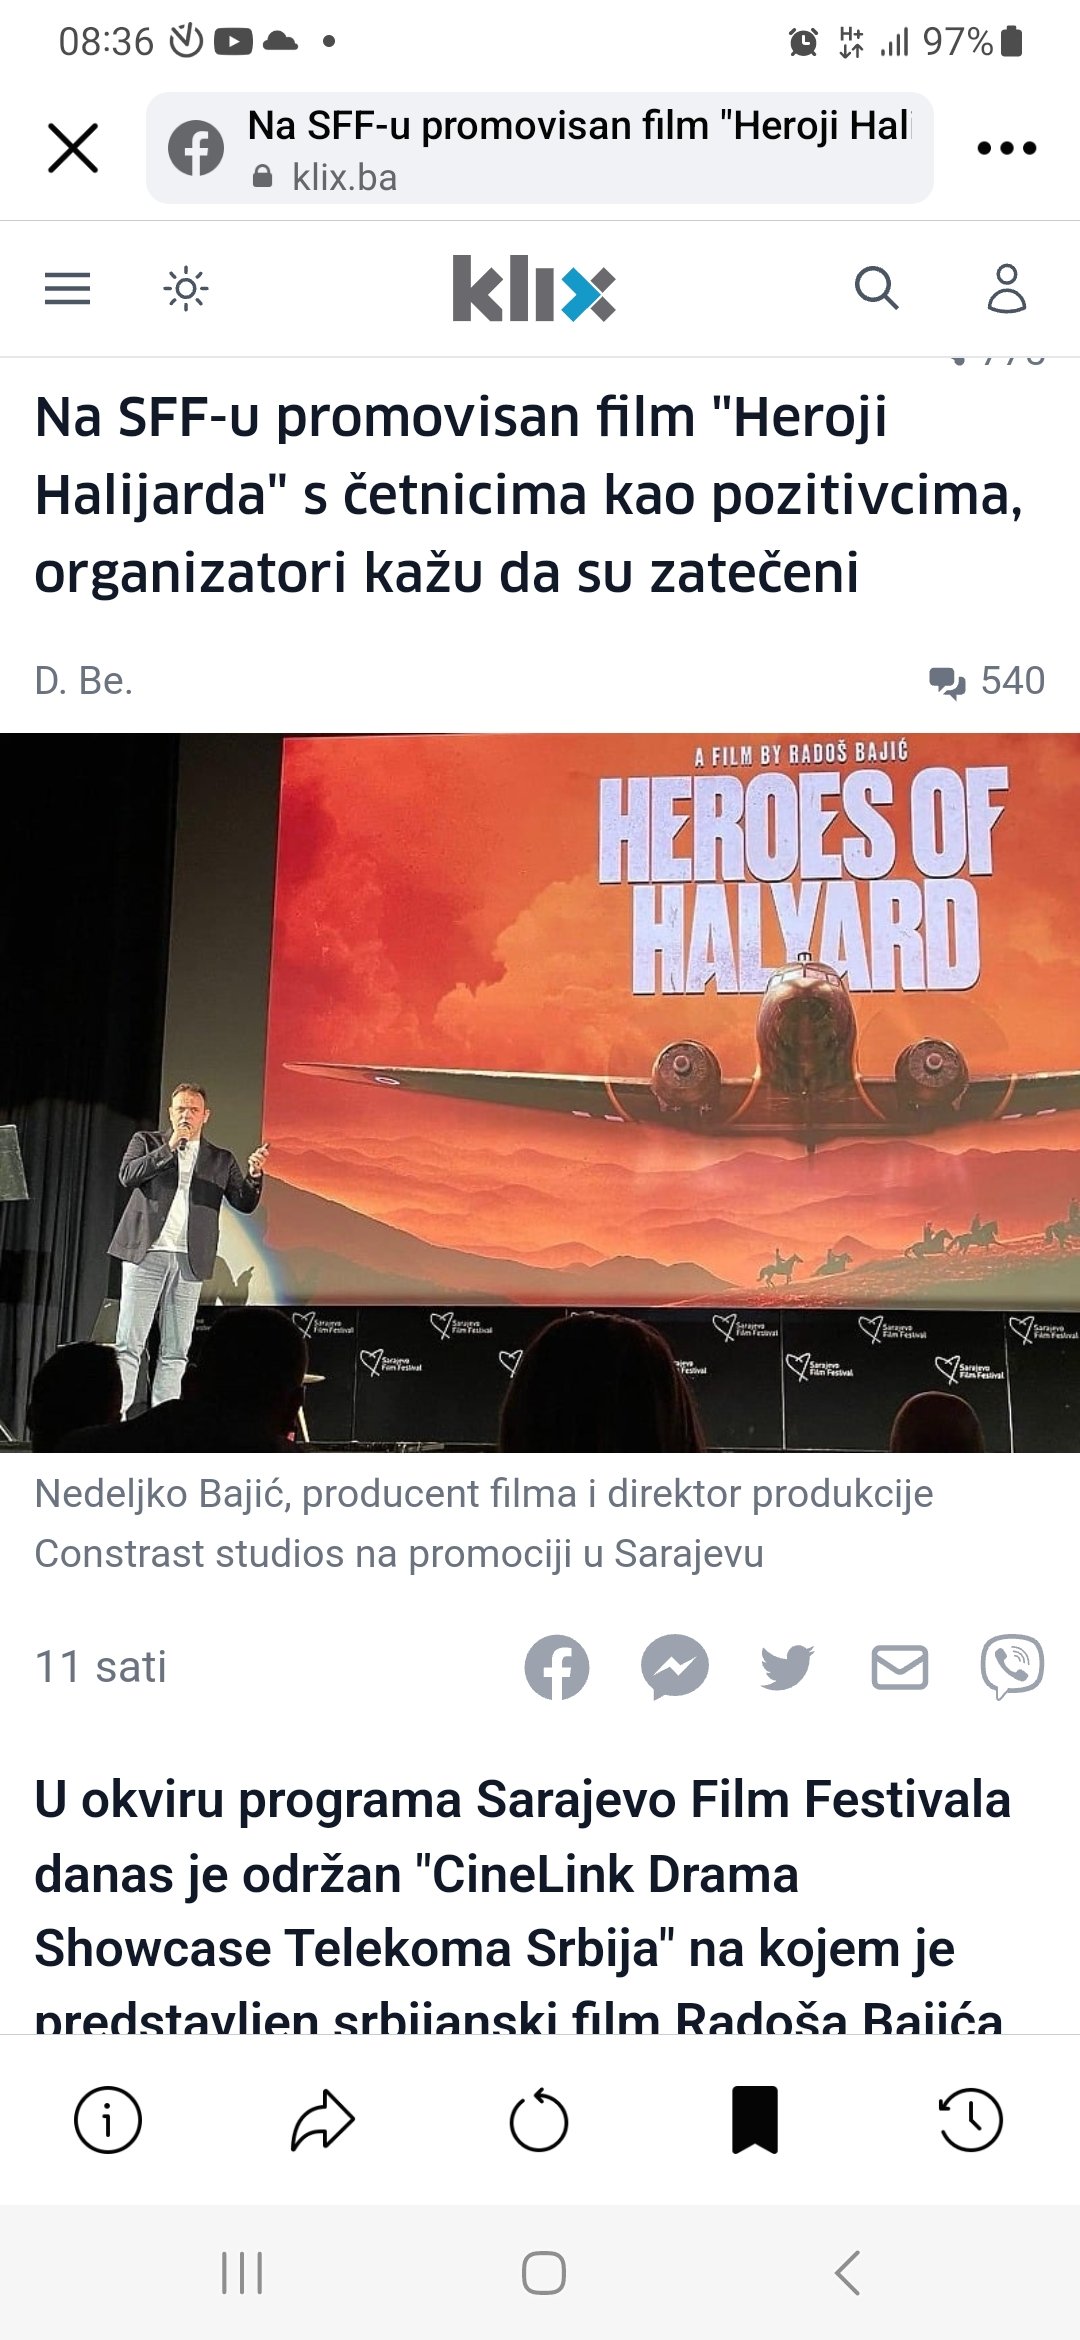 Na SFF-u promovisan film "Heroji Halijarda" s četnicima kao pozitivcima, organizatori kažu da su zatečeni